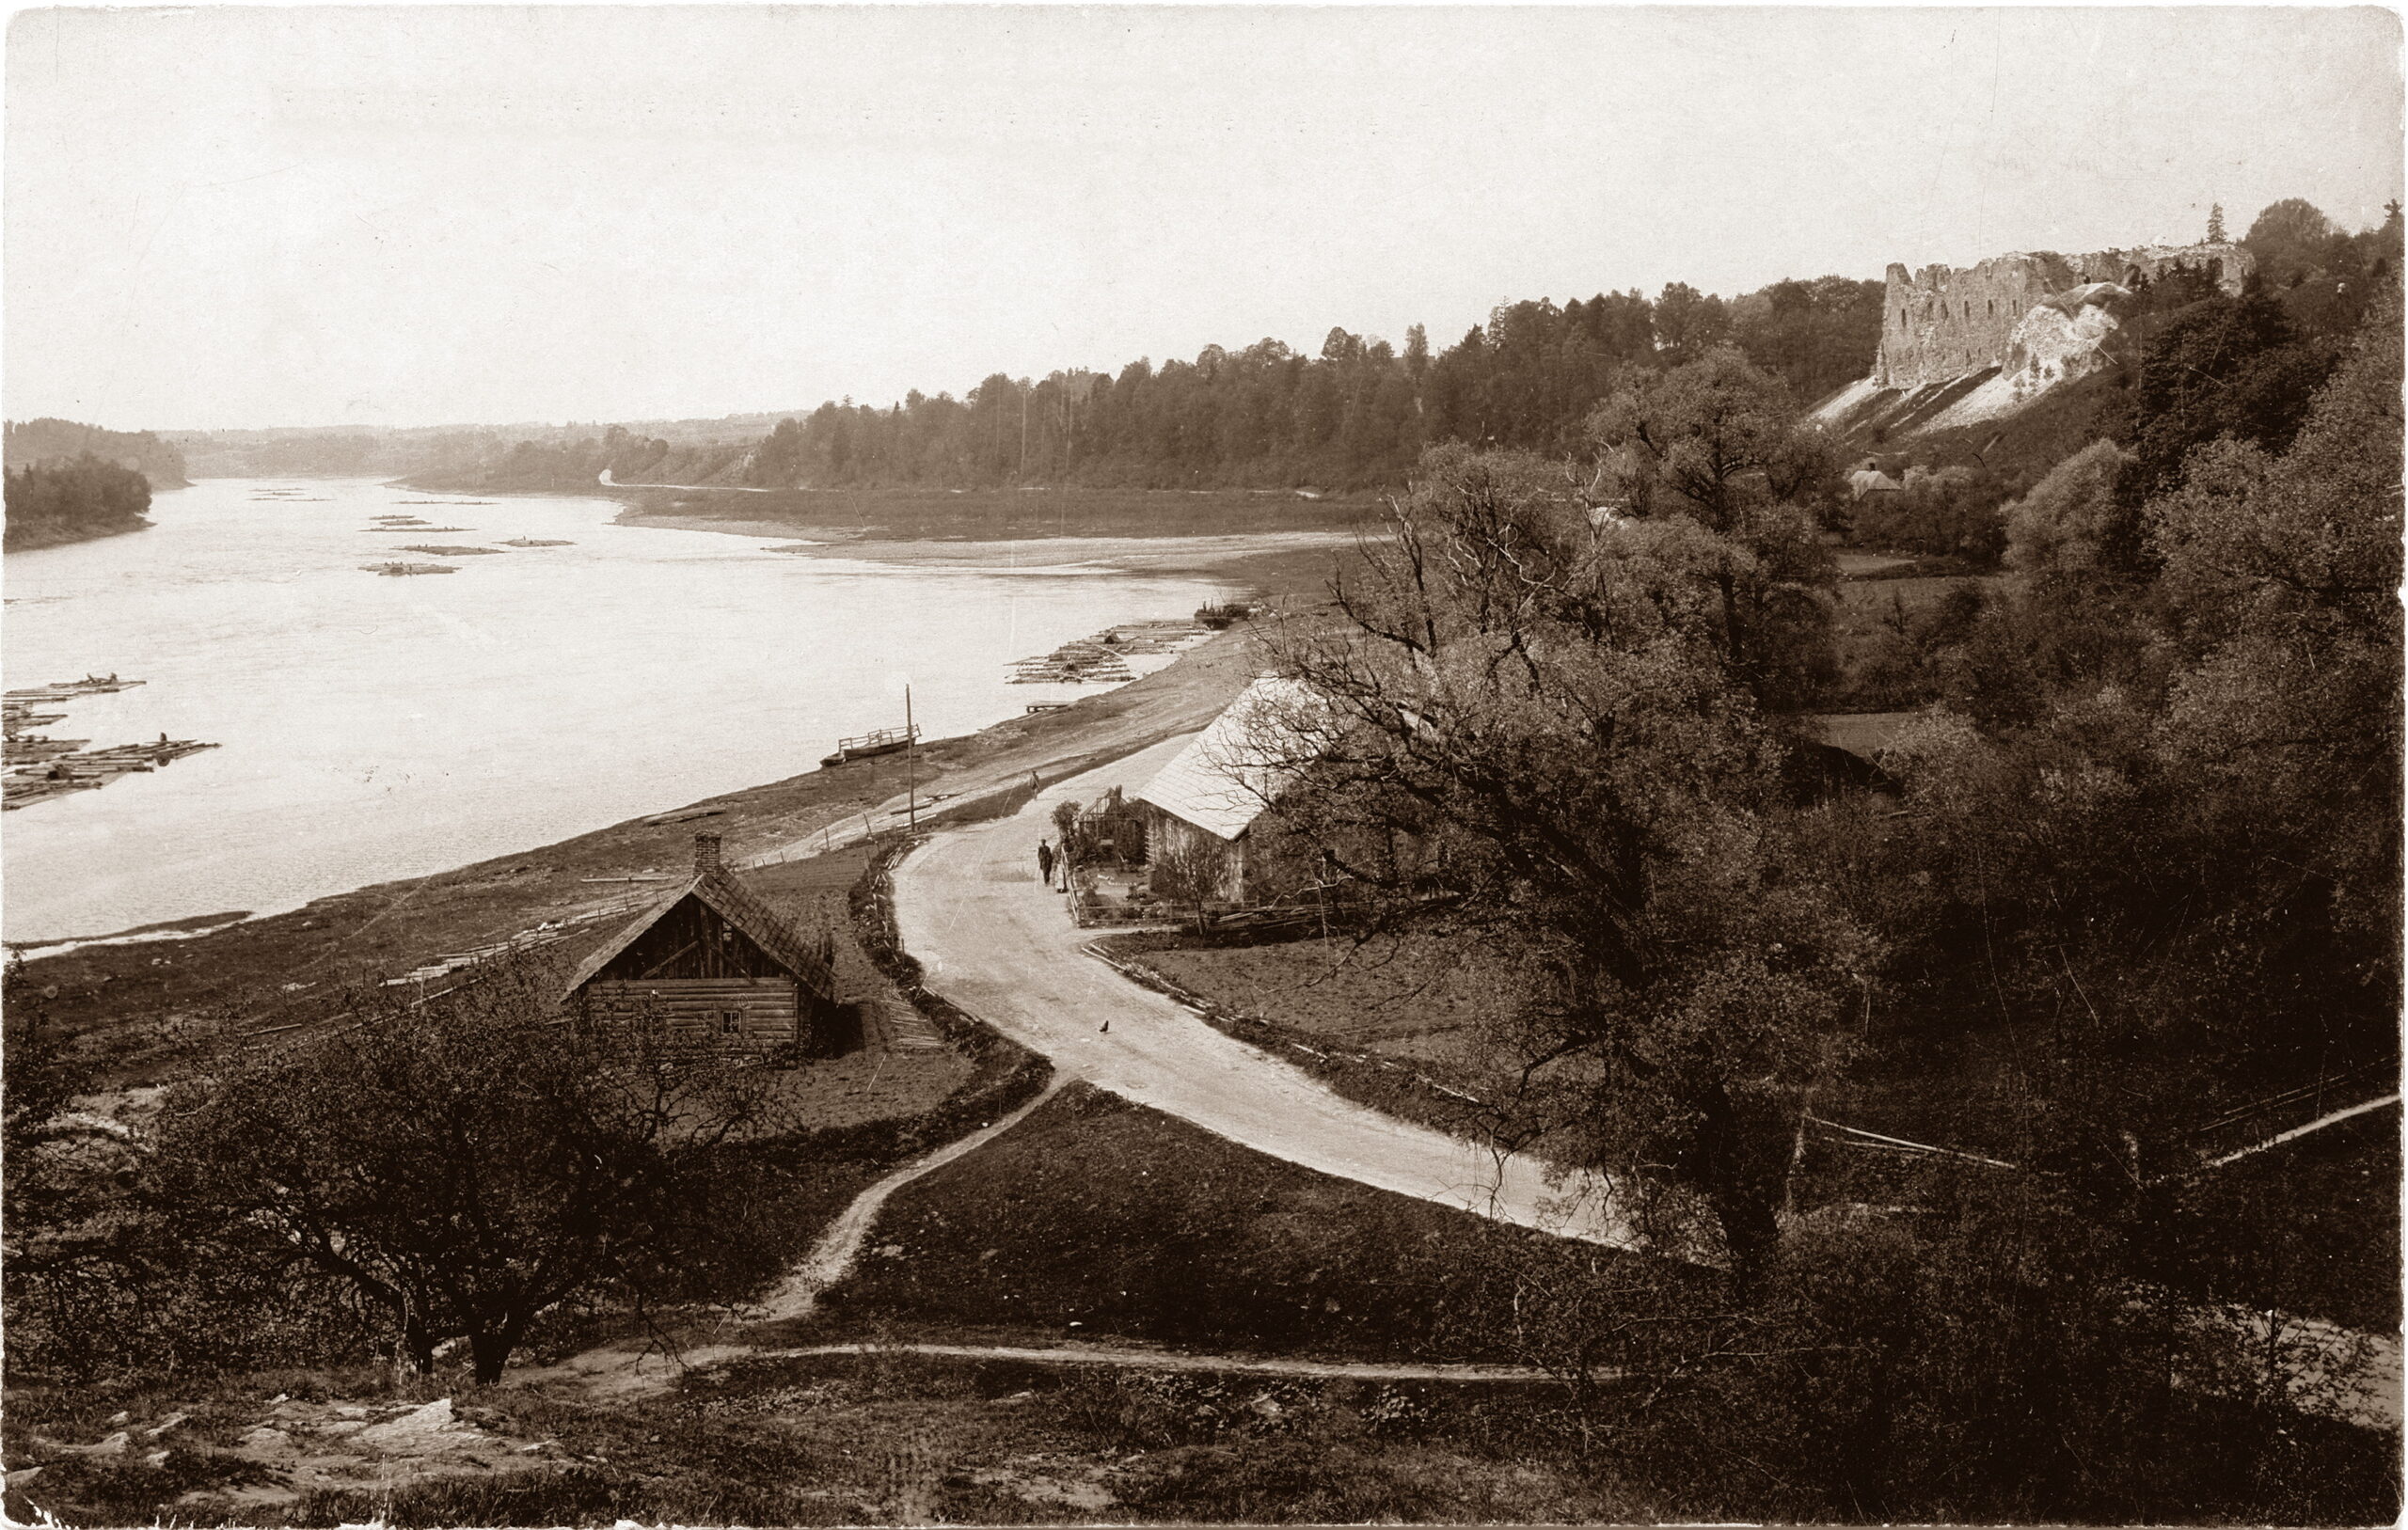 Skats no Krievkalna uz Stūreslejām, apmēram 1910. gads. Pastkarte no Daugavas muzeja krājuma.